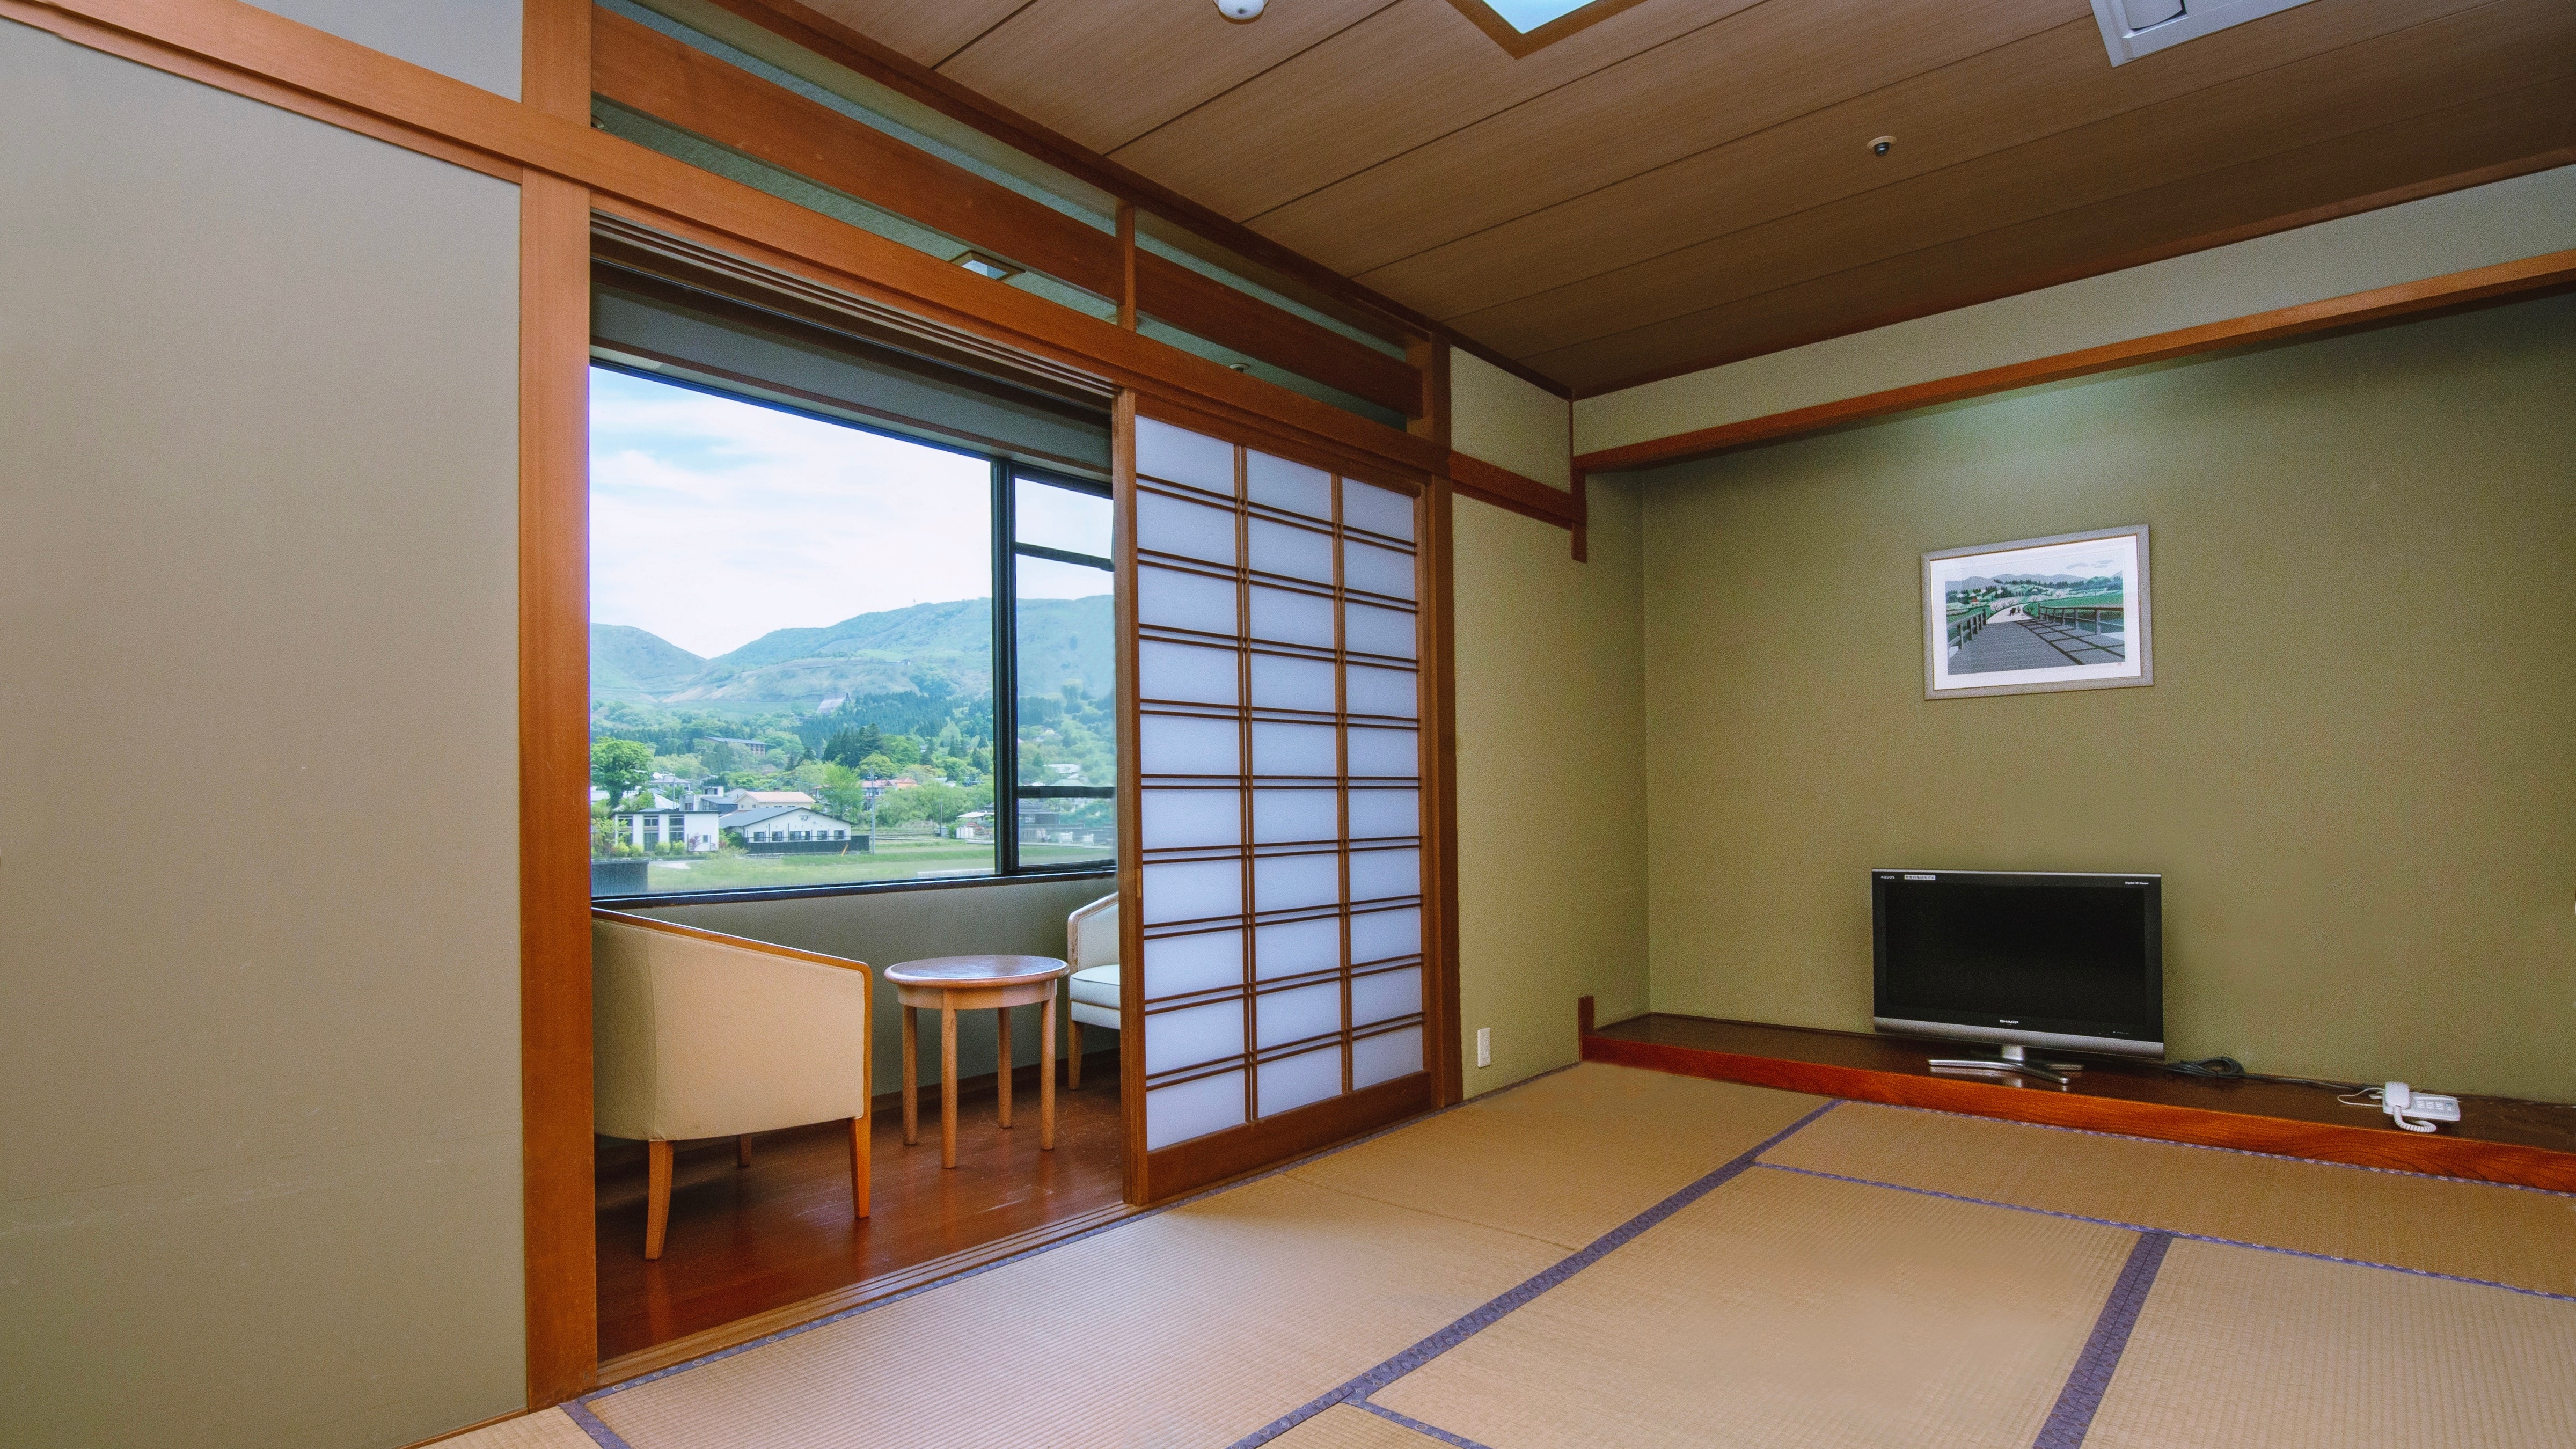 [Room] Japanese-style room 9 tatami mats